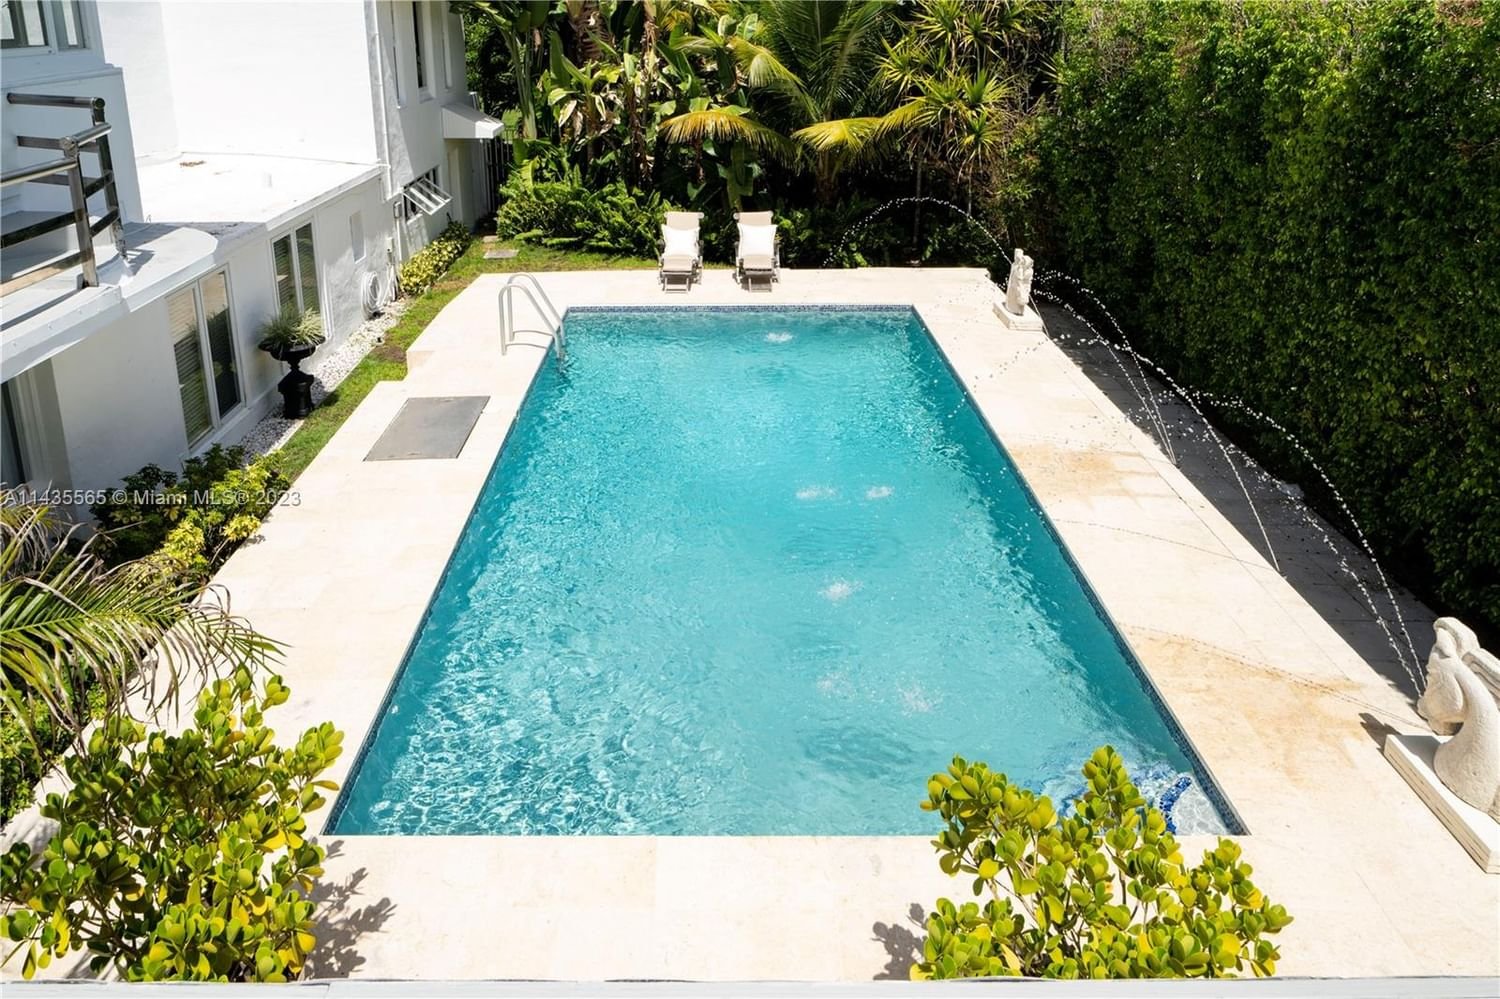 Real estate property located at 5959 La Gorce Dr, Miami-Dade County, Miami Beach, FL